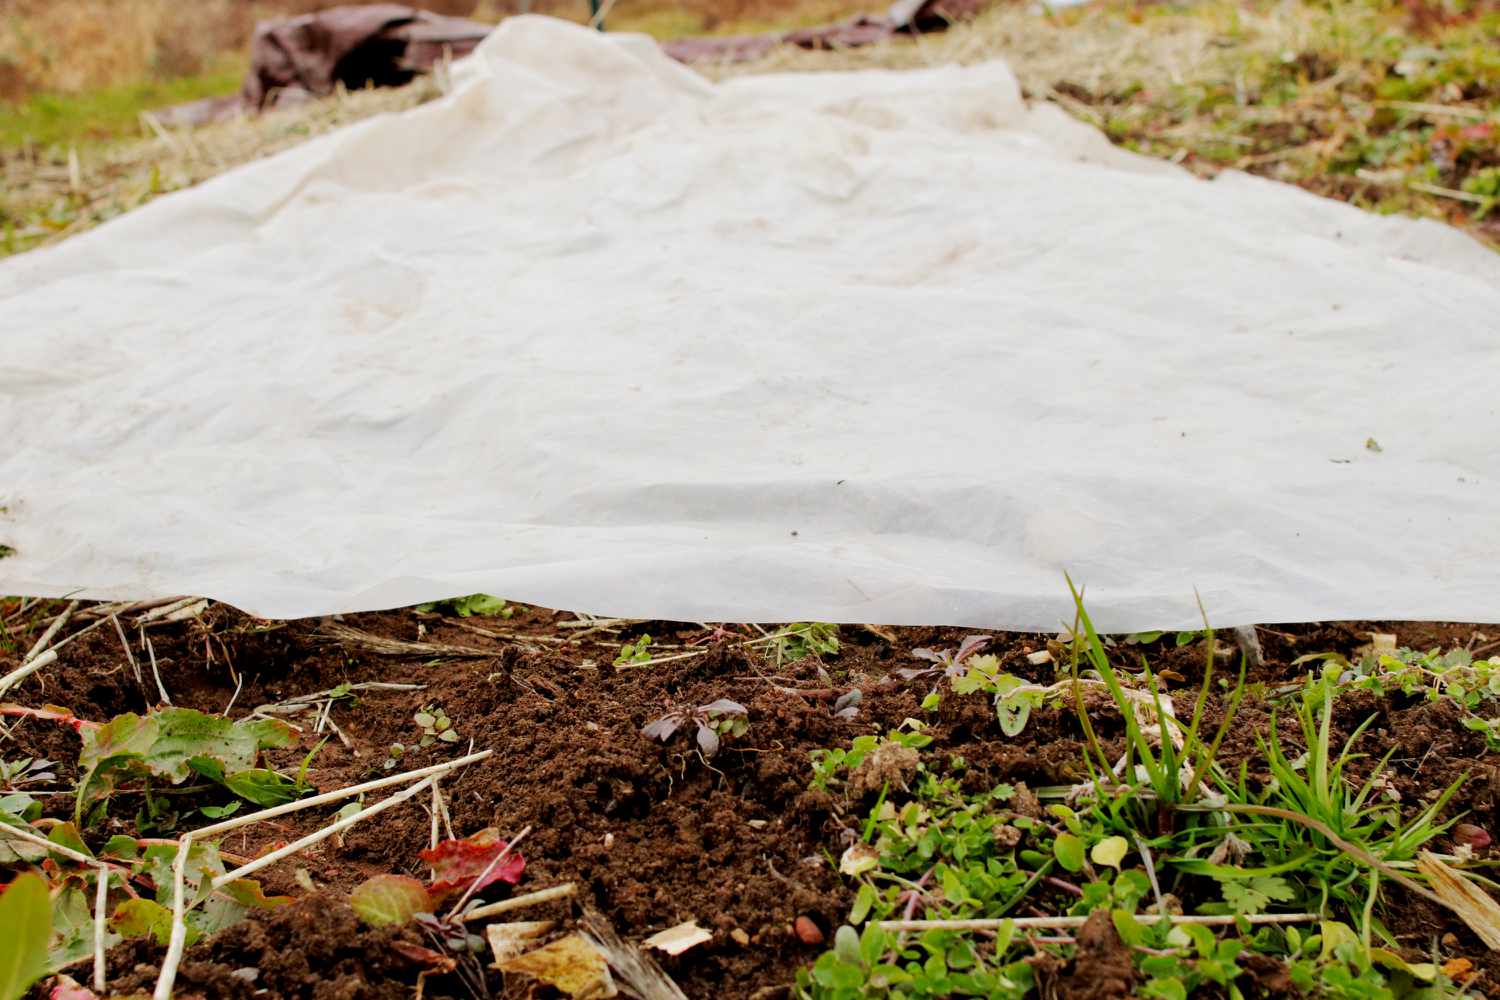 Lona de plástico transparente colocada sobre la hierba para solarizarla